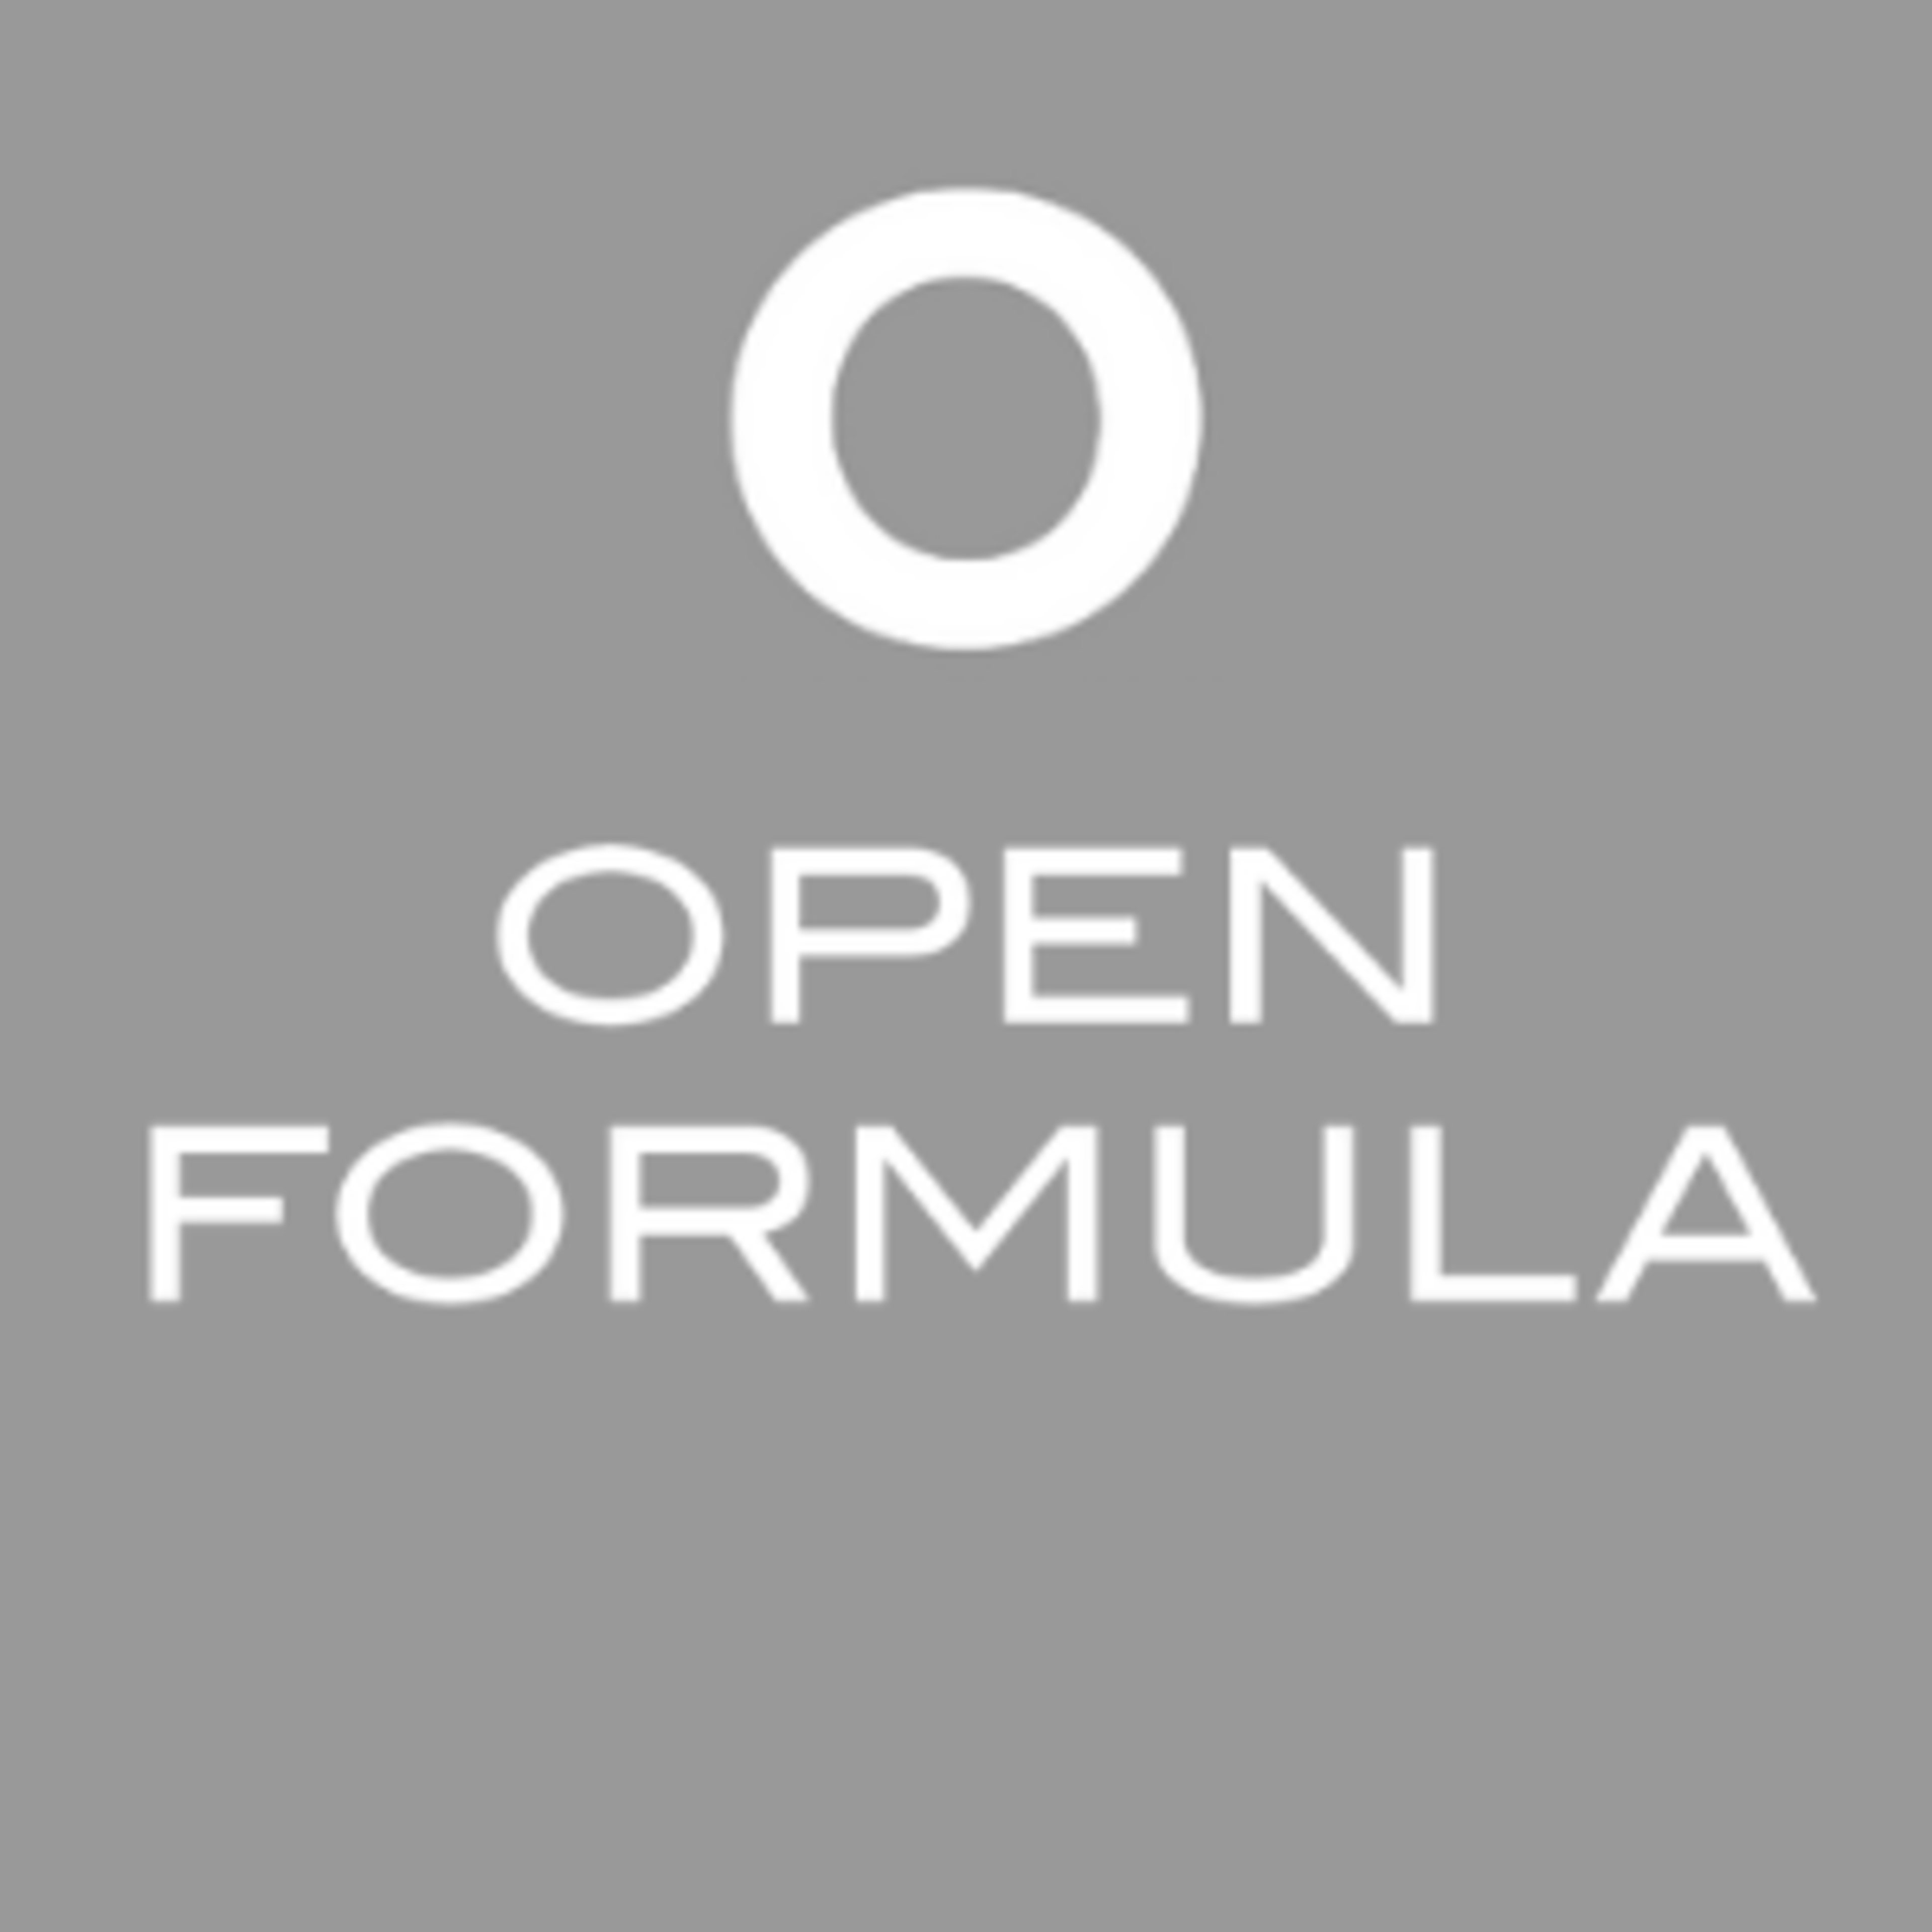 Open FormulaCode